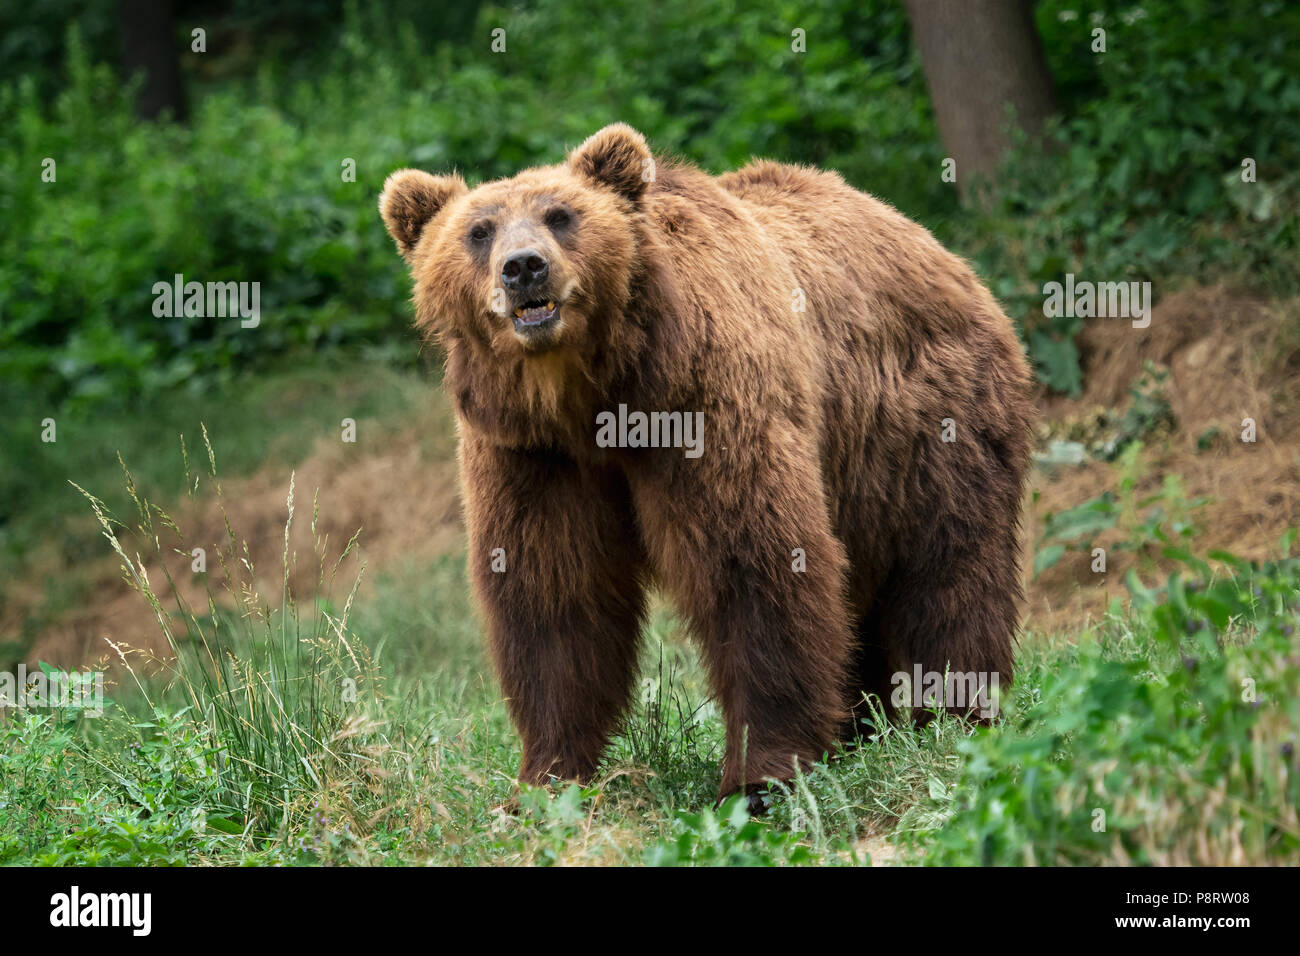 Kamchatka Brown bear (Ursus arctos beringianus). Brown fur coat, danger and aggresive animal. Big brown bear from Russia. Stock Photo